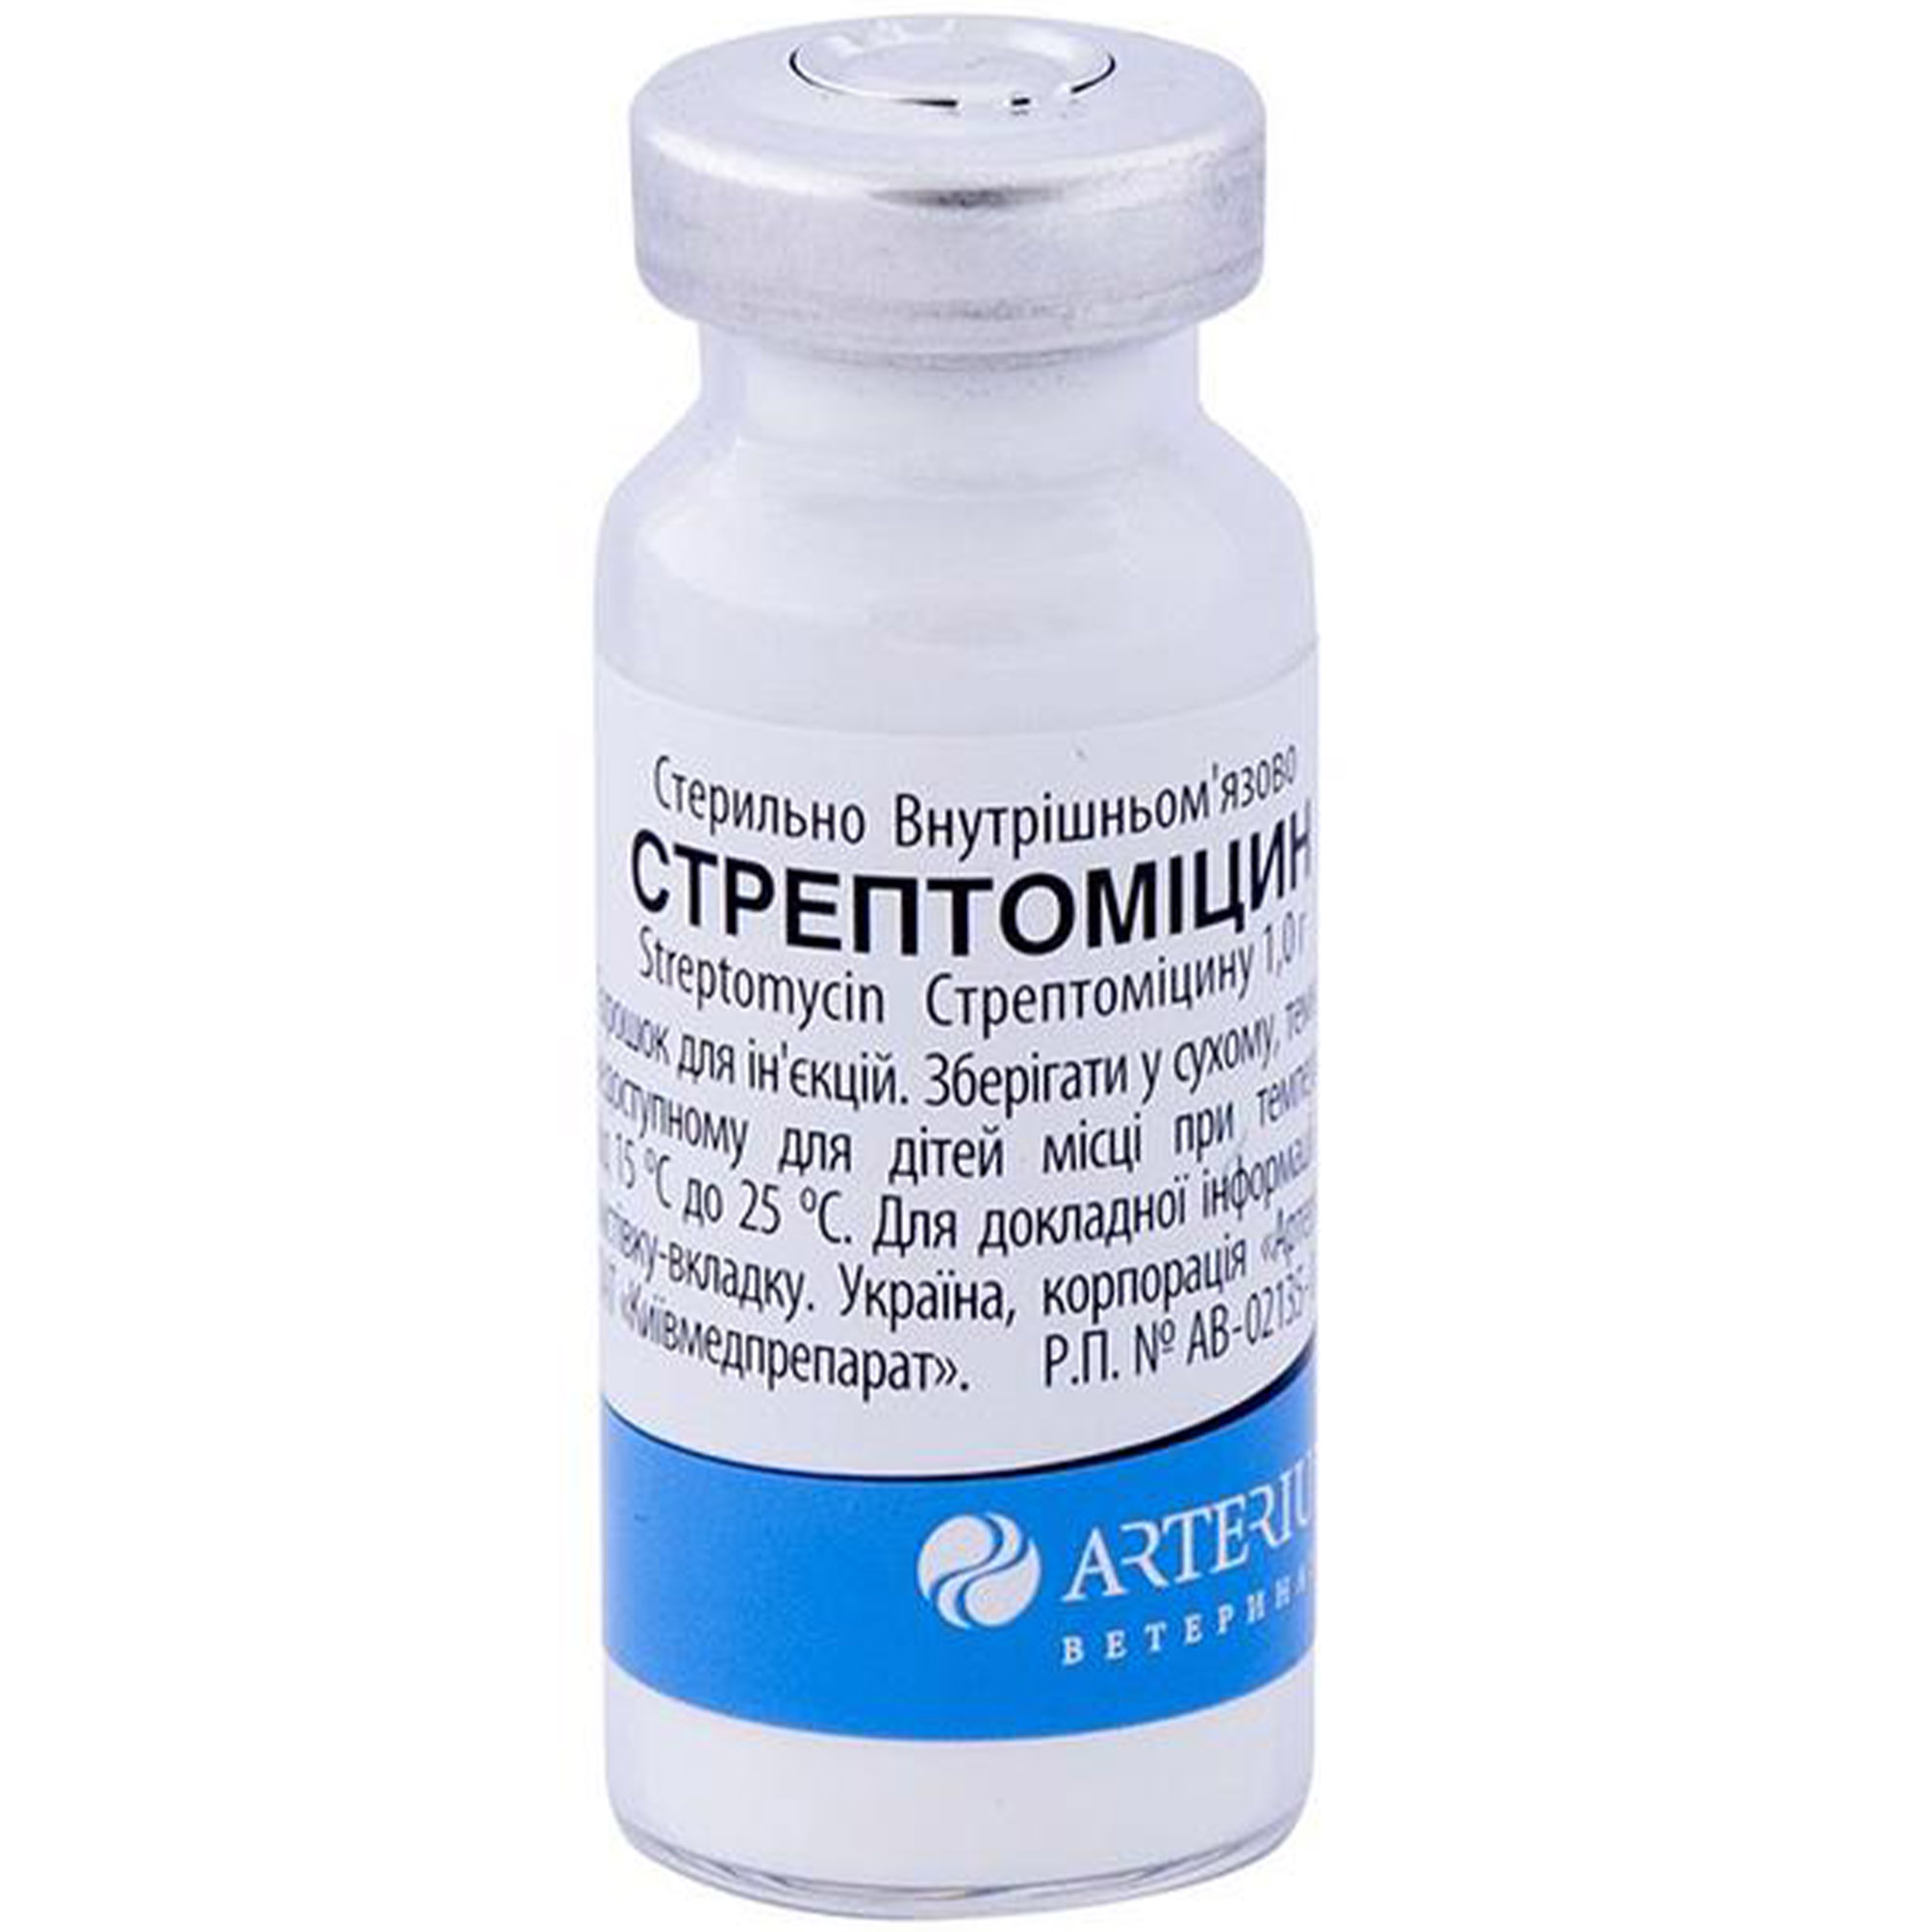 Порошок для инъекций Arterium Стрептомицин 1 г - фото 1